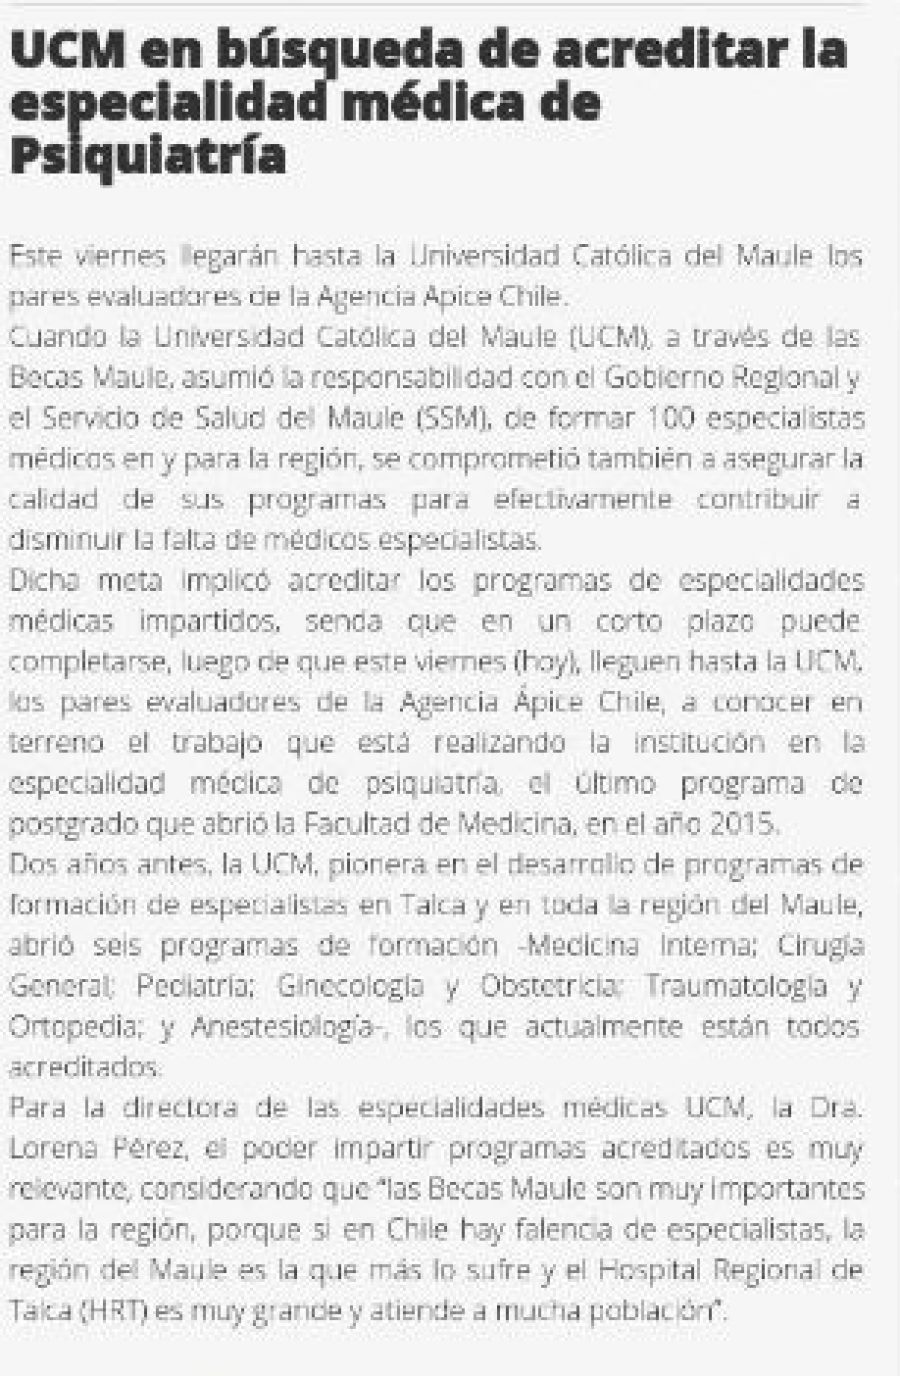 13 de abril en Diario El Heraldo: “UCM en búsqueda de acreditar la especialidad médica de Psiquiatría”